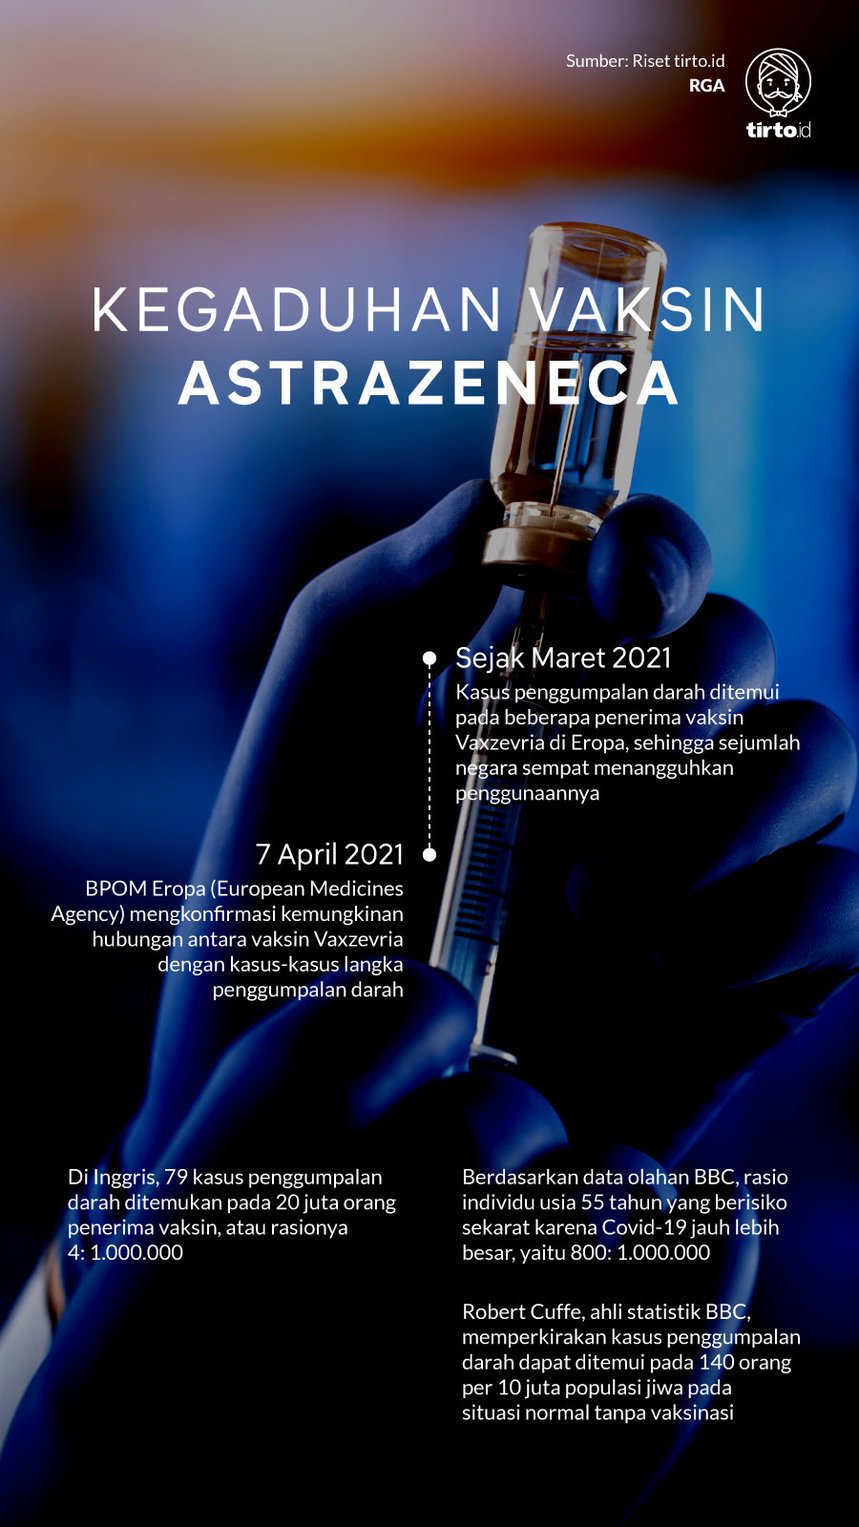 37+ Vaksin Astrazeneca Images